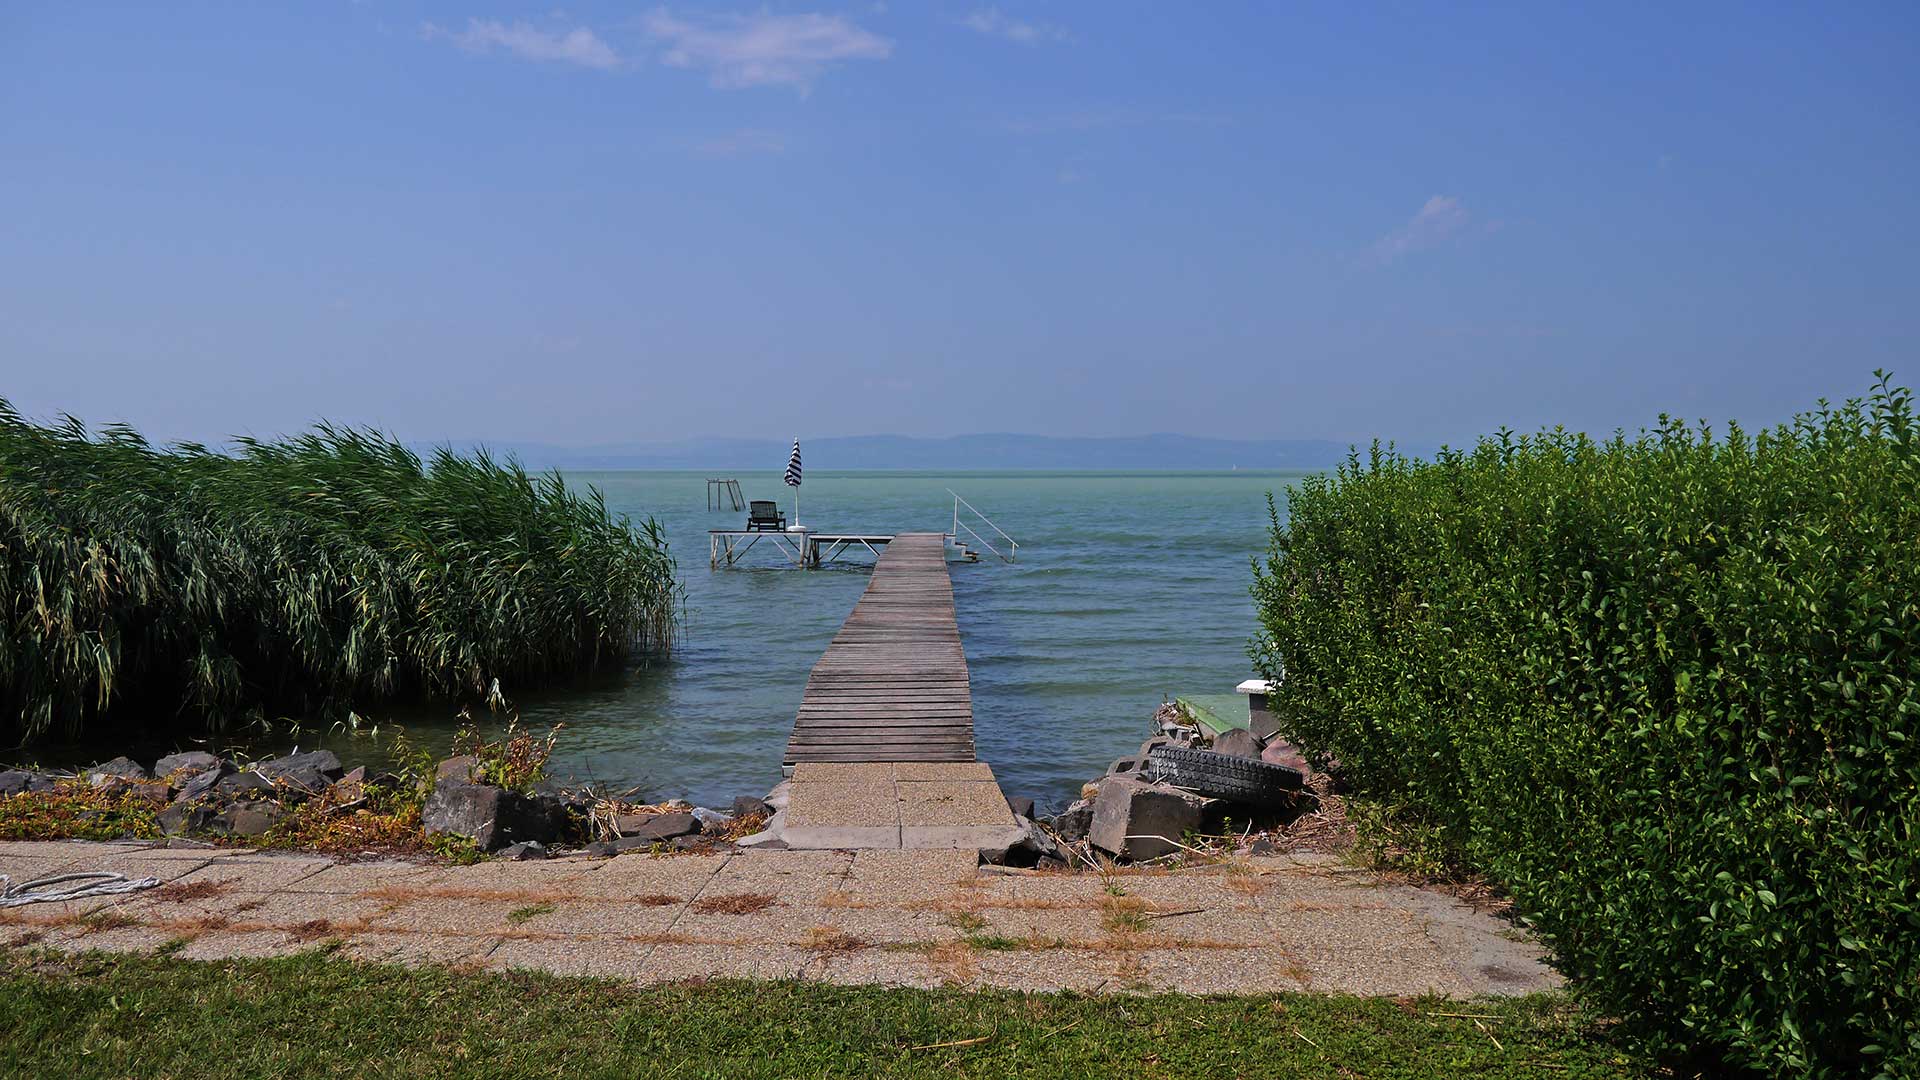 A képen, egy valamikor eladó vízparti jellegű nyaraló látszik a Balaton partján, saját stéggel